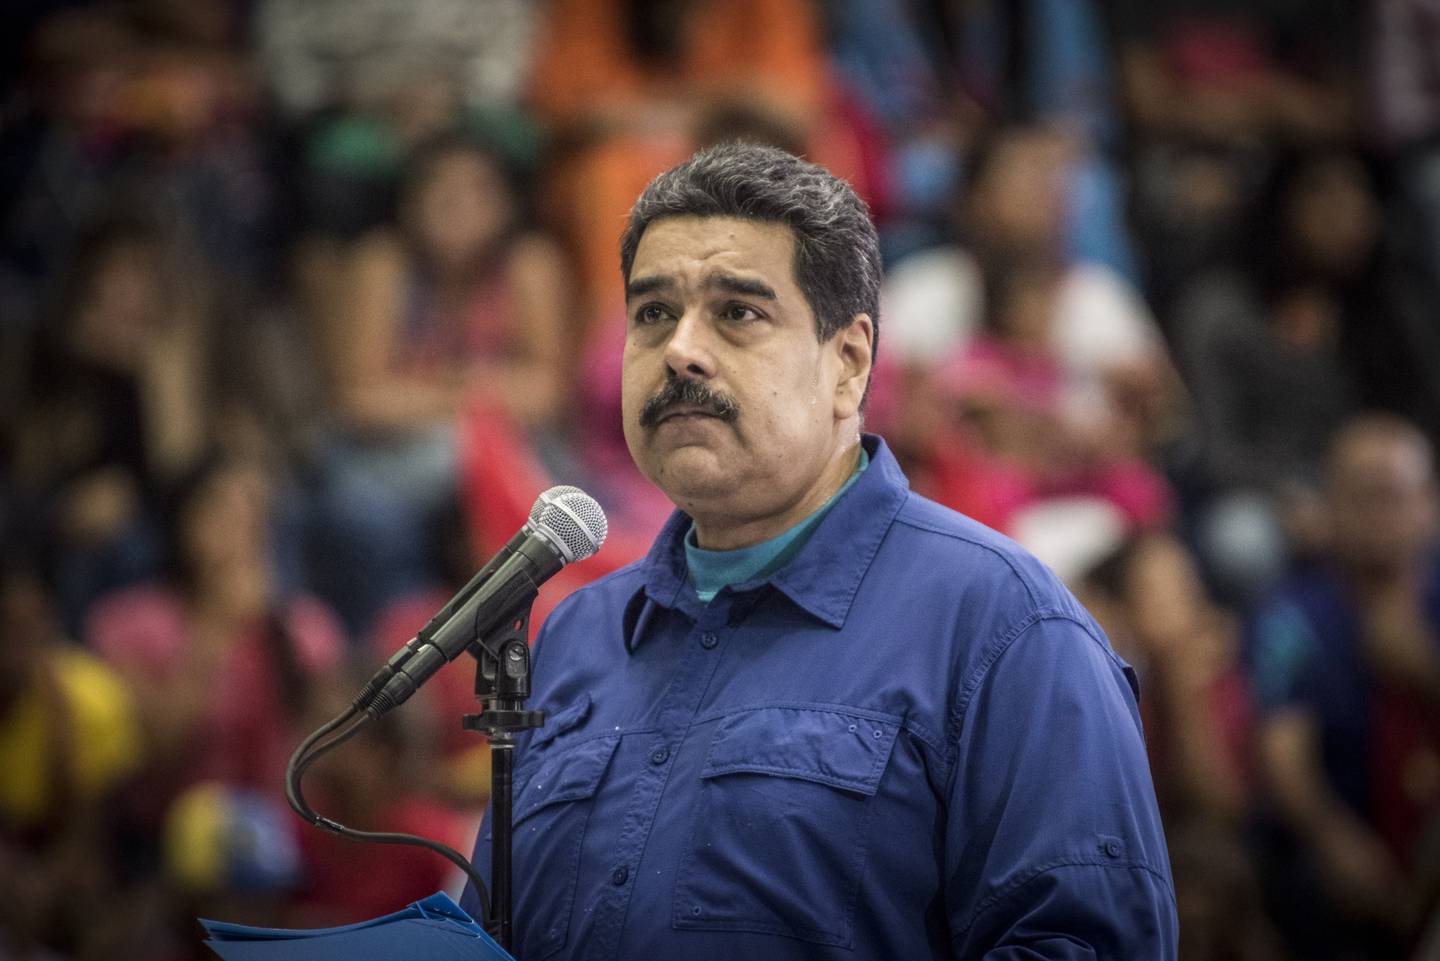 Nicolás Maduro tildó de "exitosa" la jornada de las primarias del PSUV para definir a los candidatos del chavismo para las elecciones regionales de noviembre.dfd